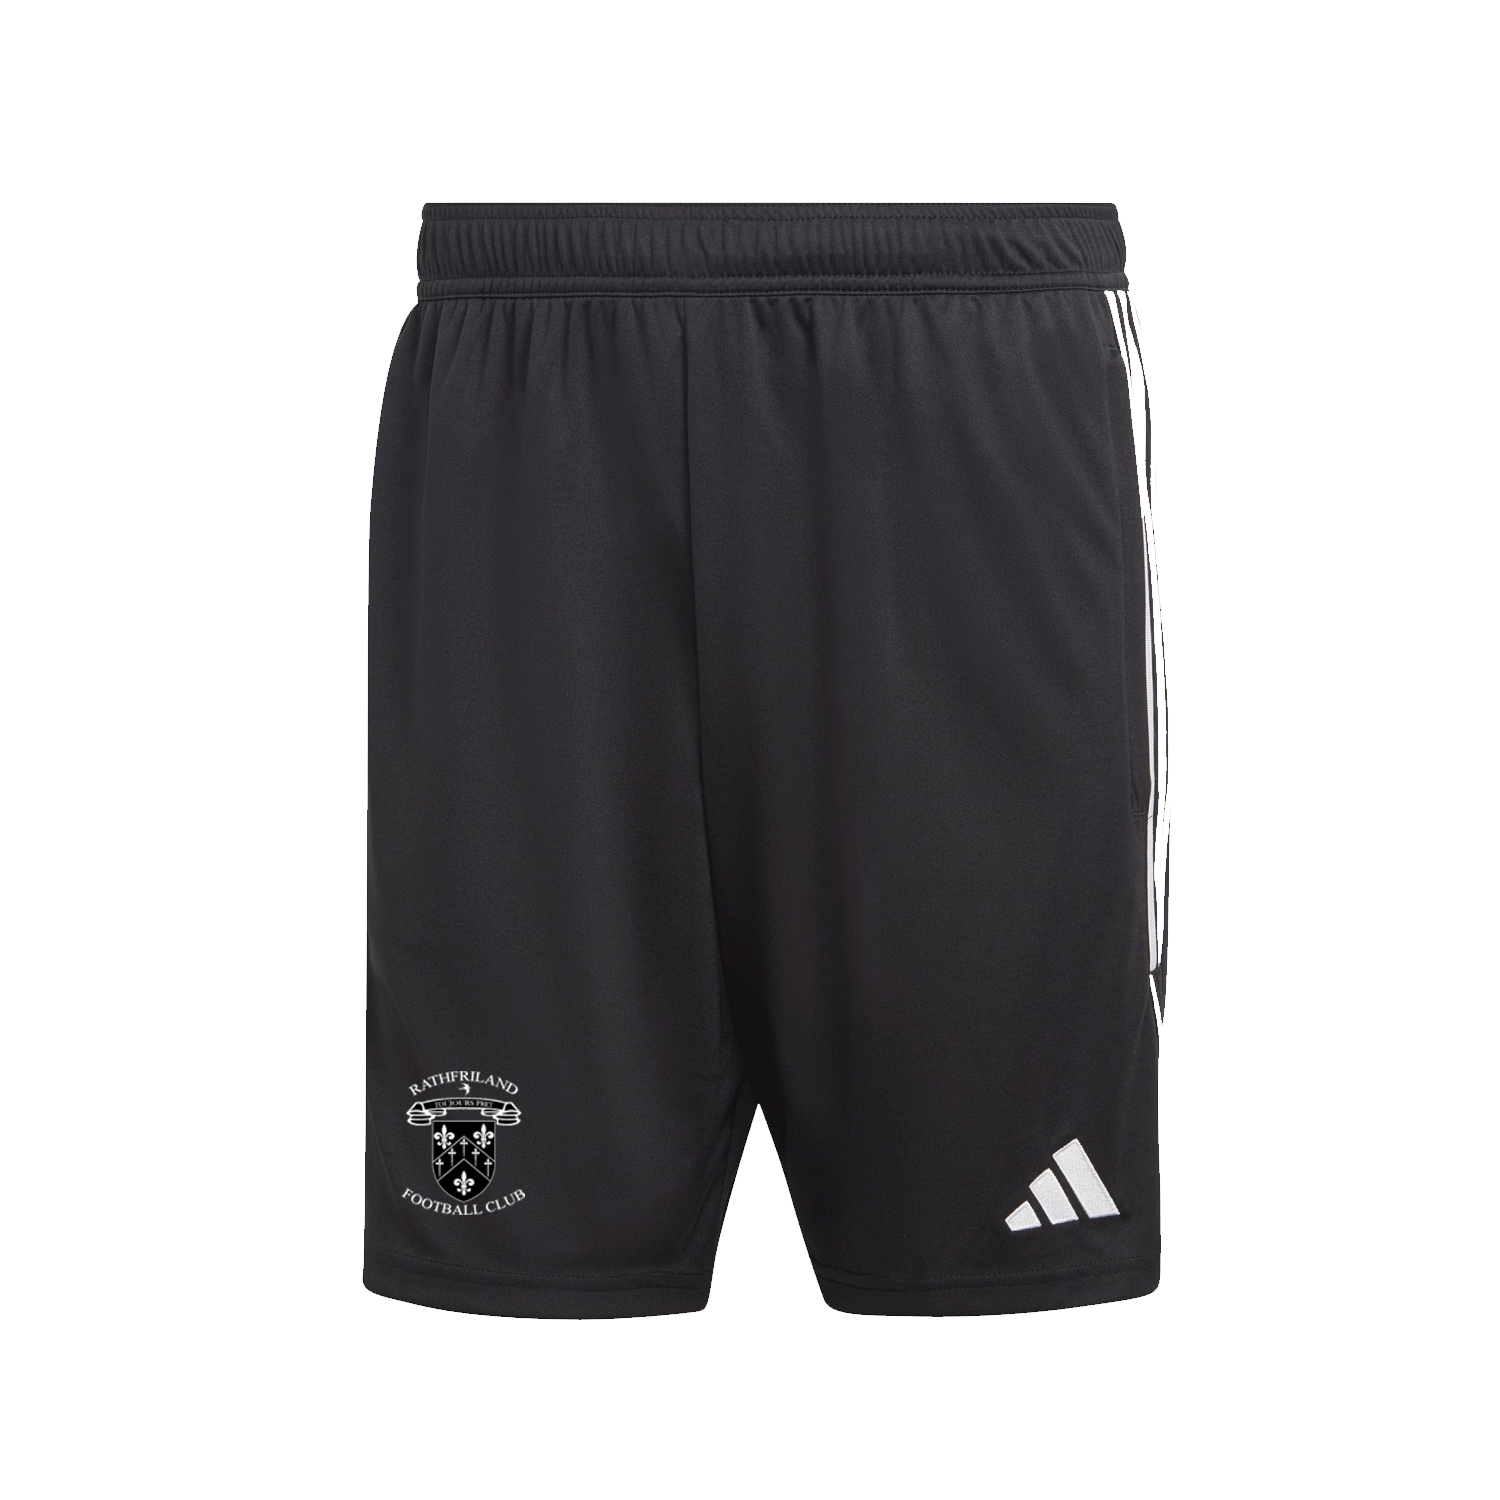 Rathfriland FC Adidas Training Black Shorts